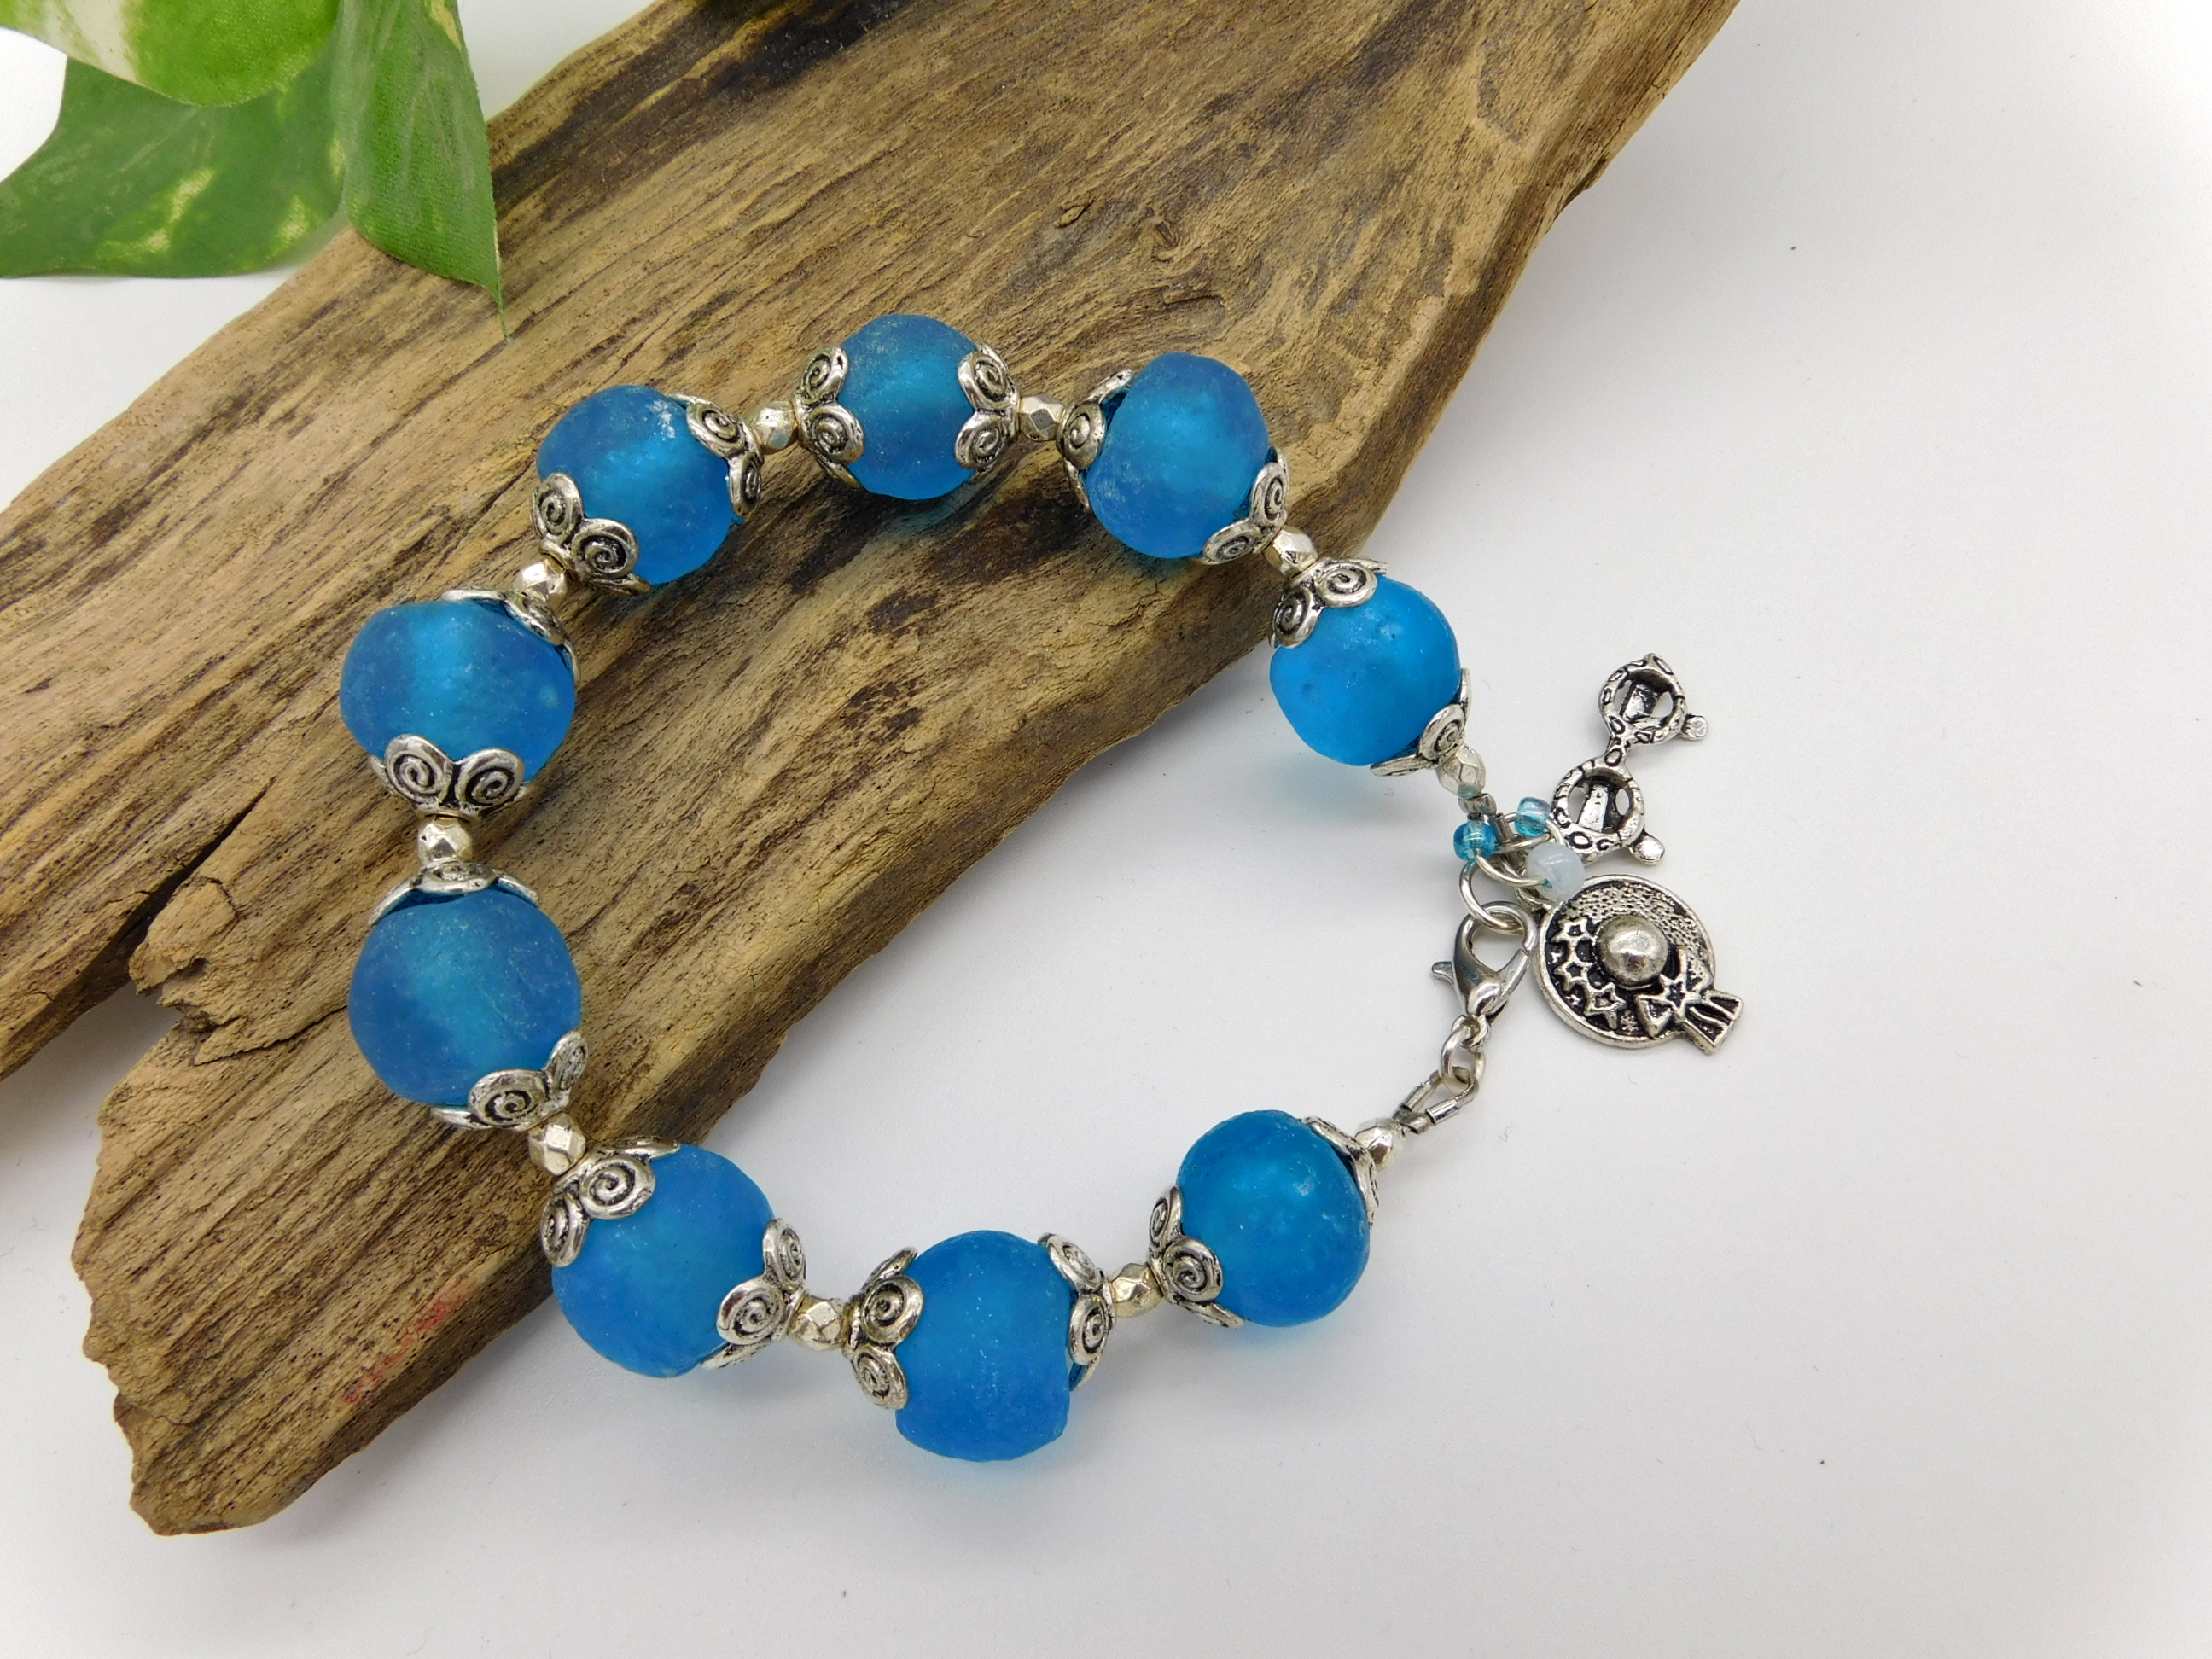 Armband aus afrikanischen Krobo Recyclingglas Perlen - türkis-blau,silber - 21 cm